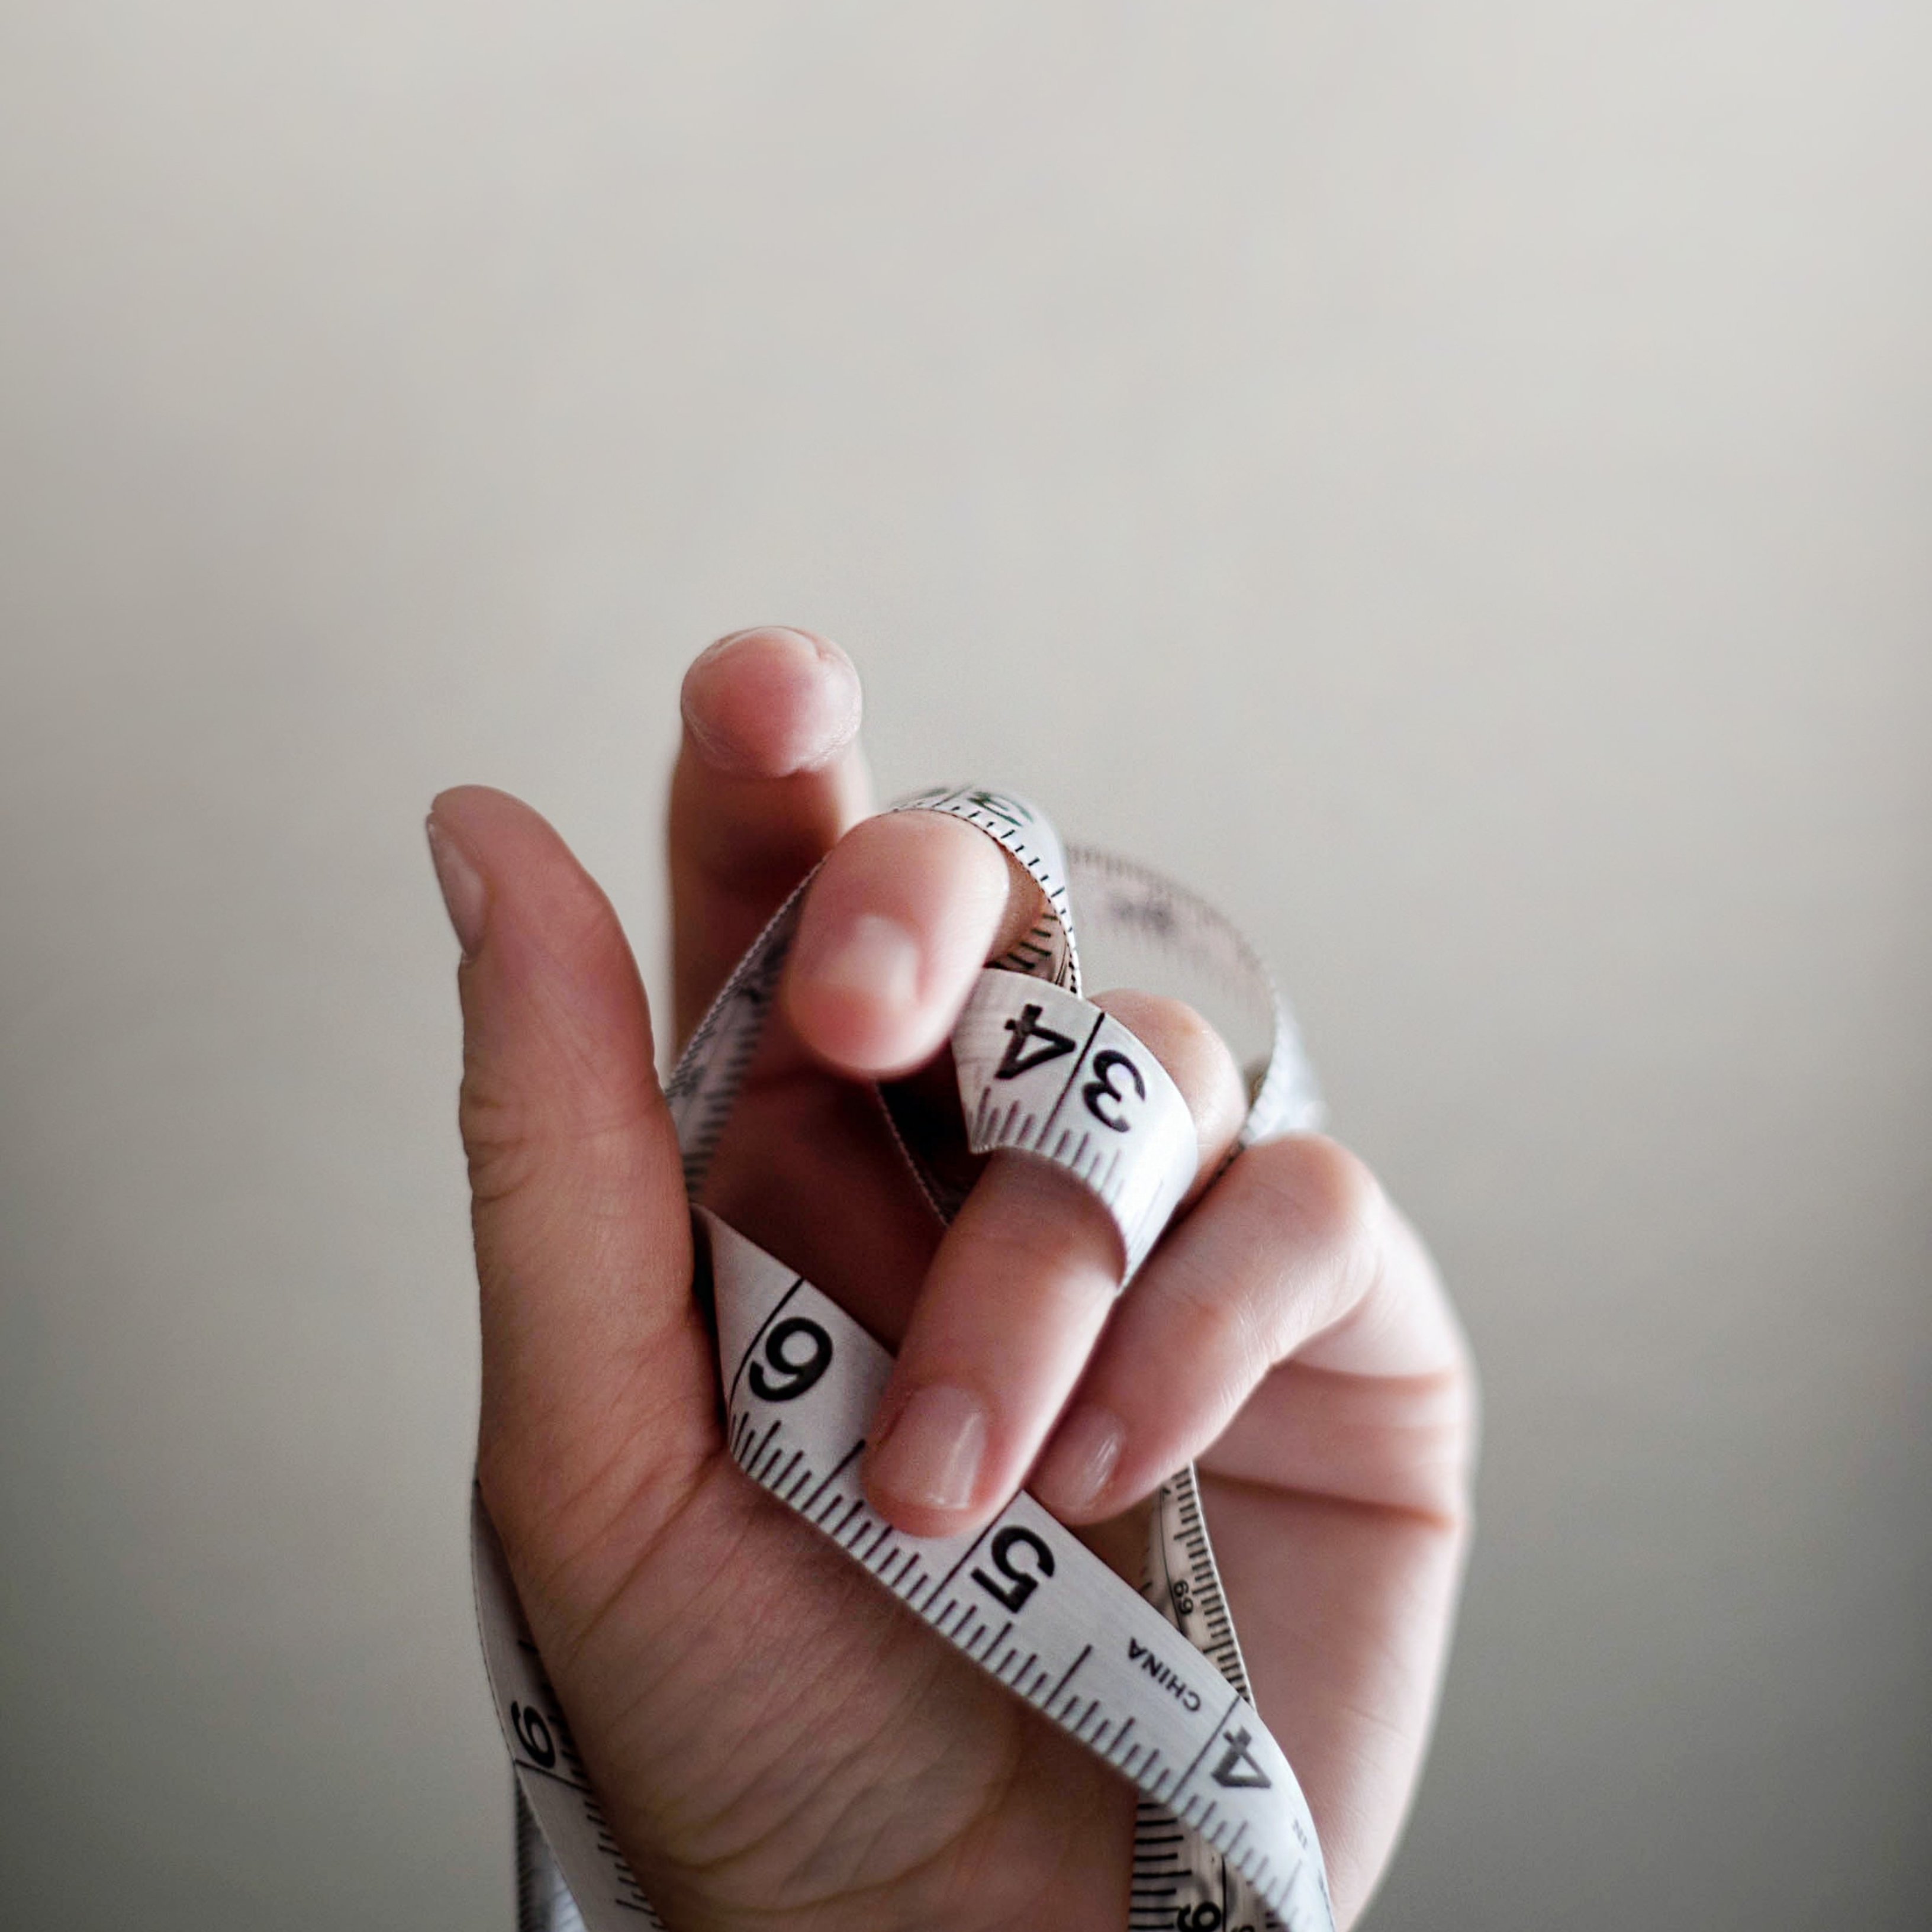 Quines causes mèdiques expliquen augmentar de pes?